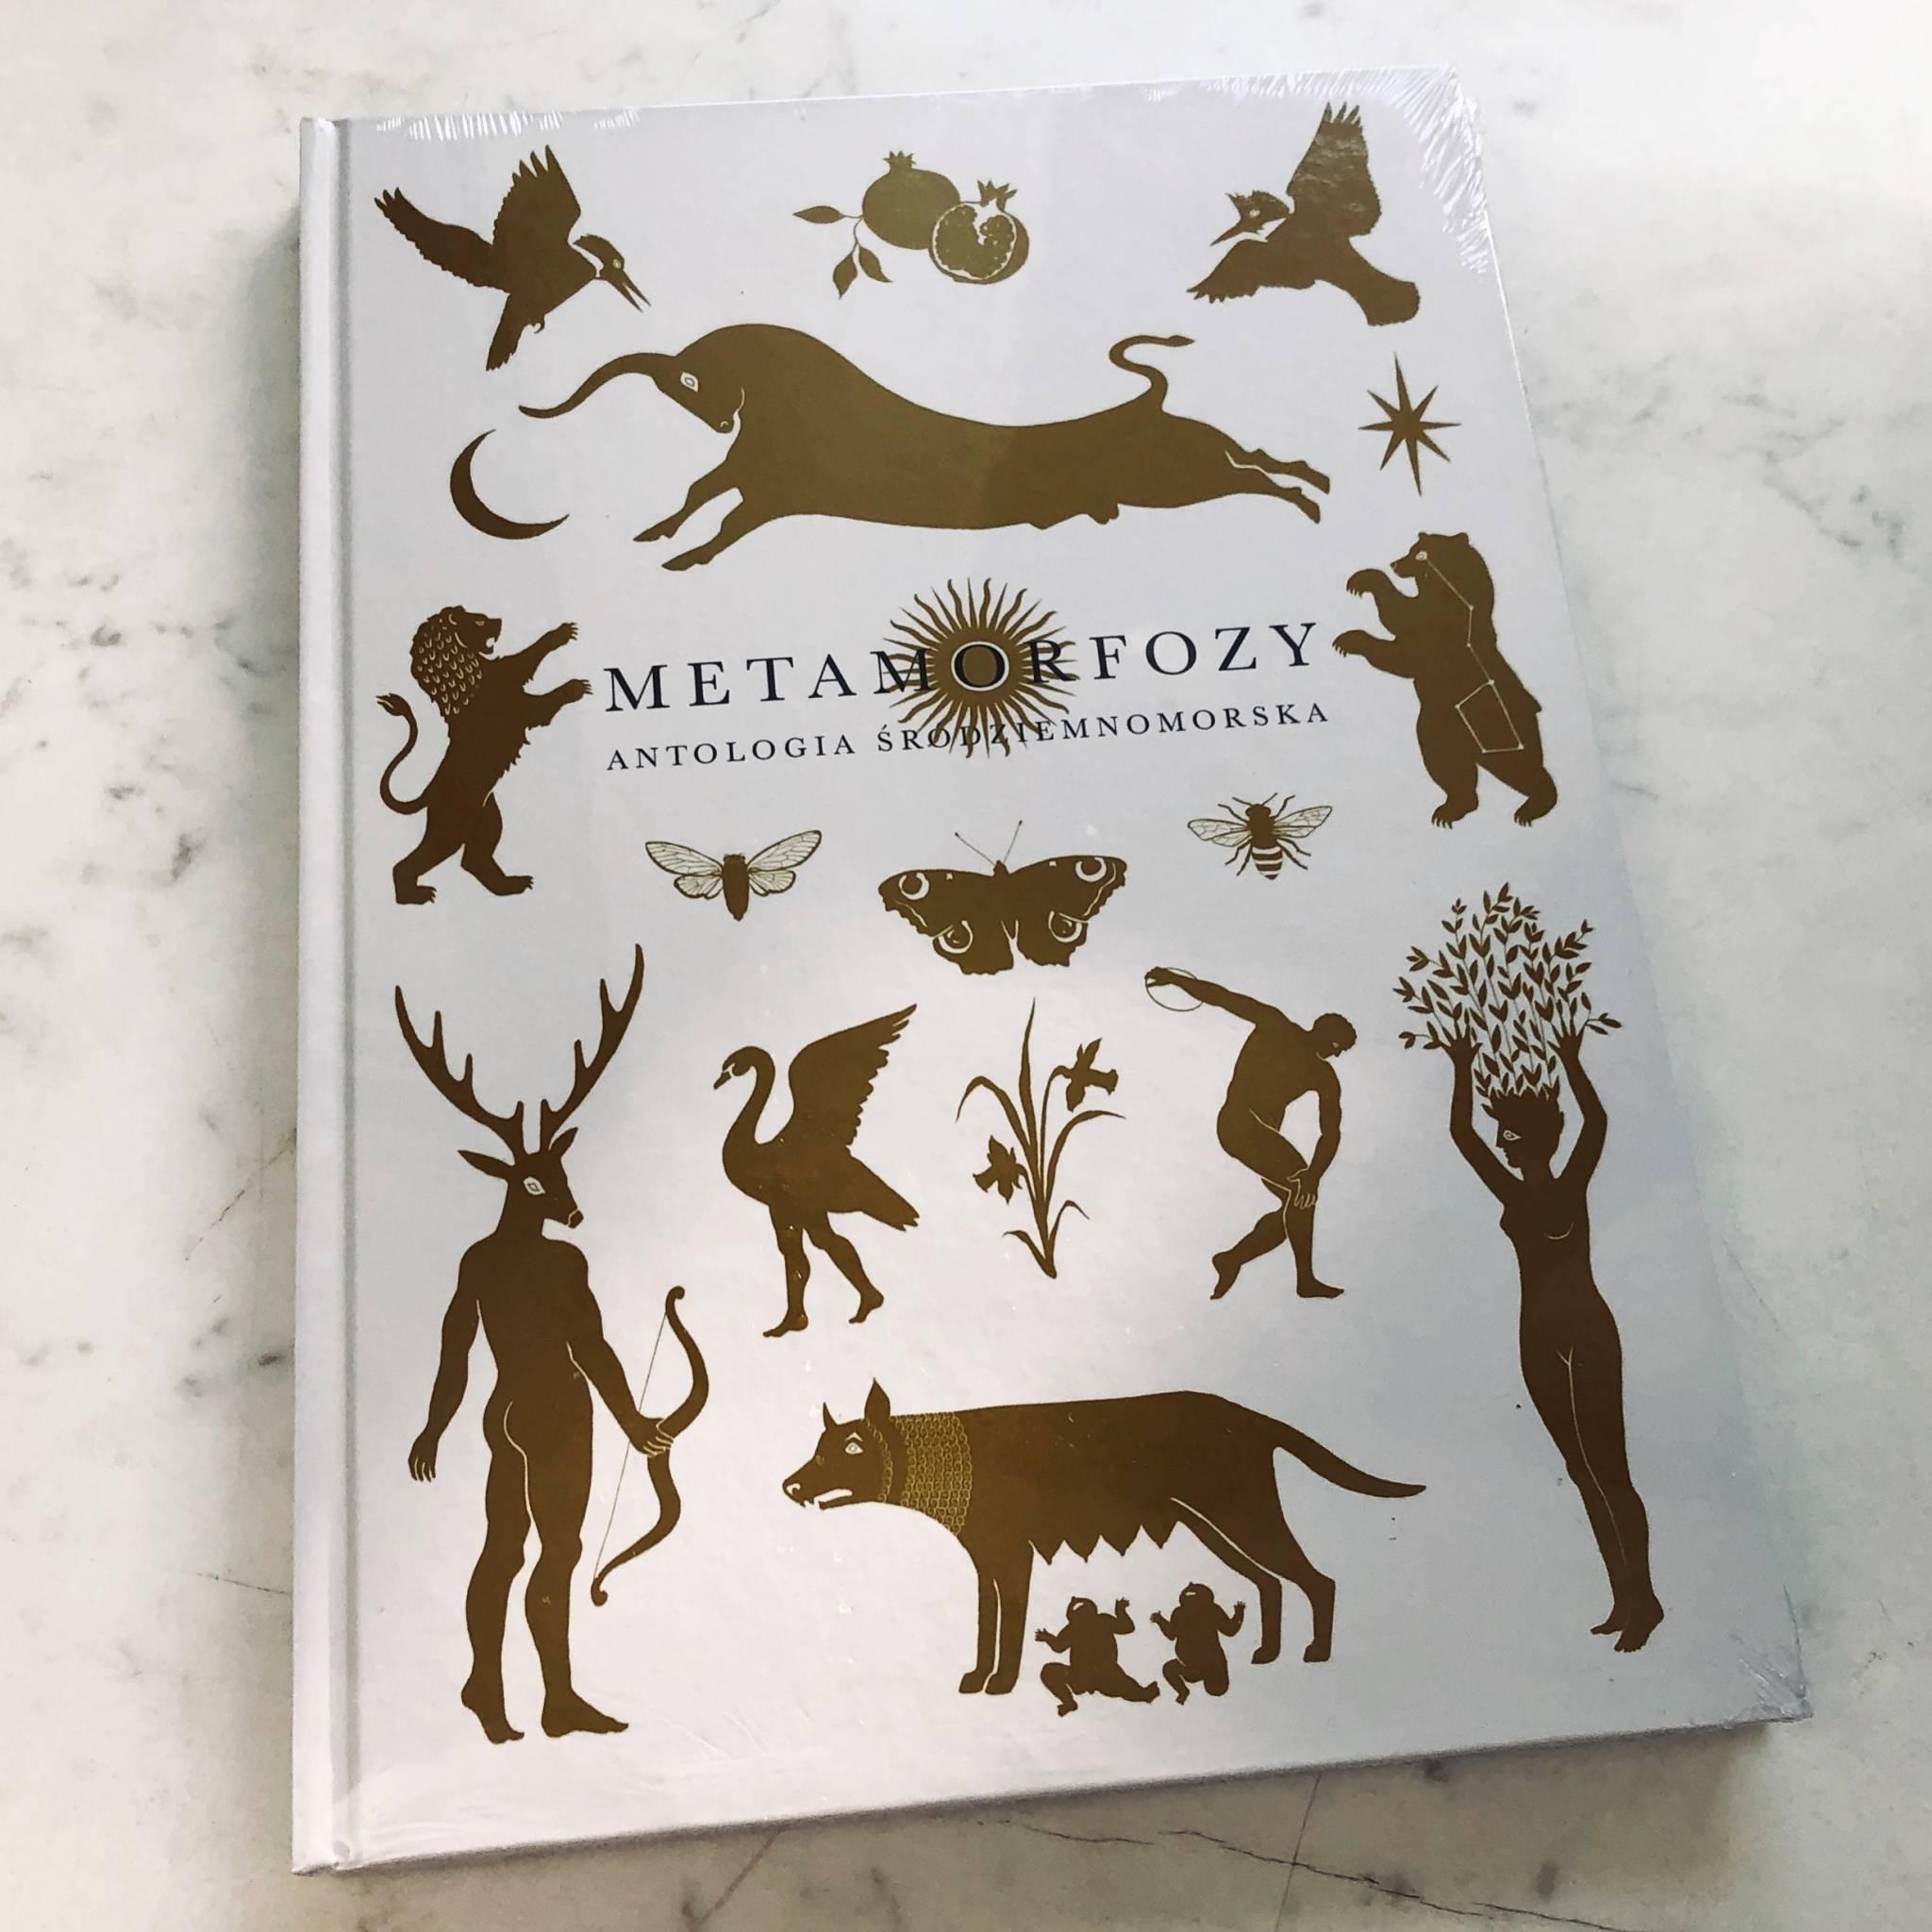  Album Metamorfozy Antologia Śródziemnomorska to piękne wydanie Wydawnictwa Lente z wyjątkowymi ilustracjami Natalii Olbiński. (Fot. Wydawnictwo Lente)